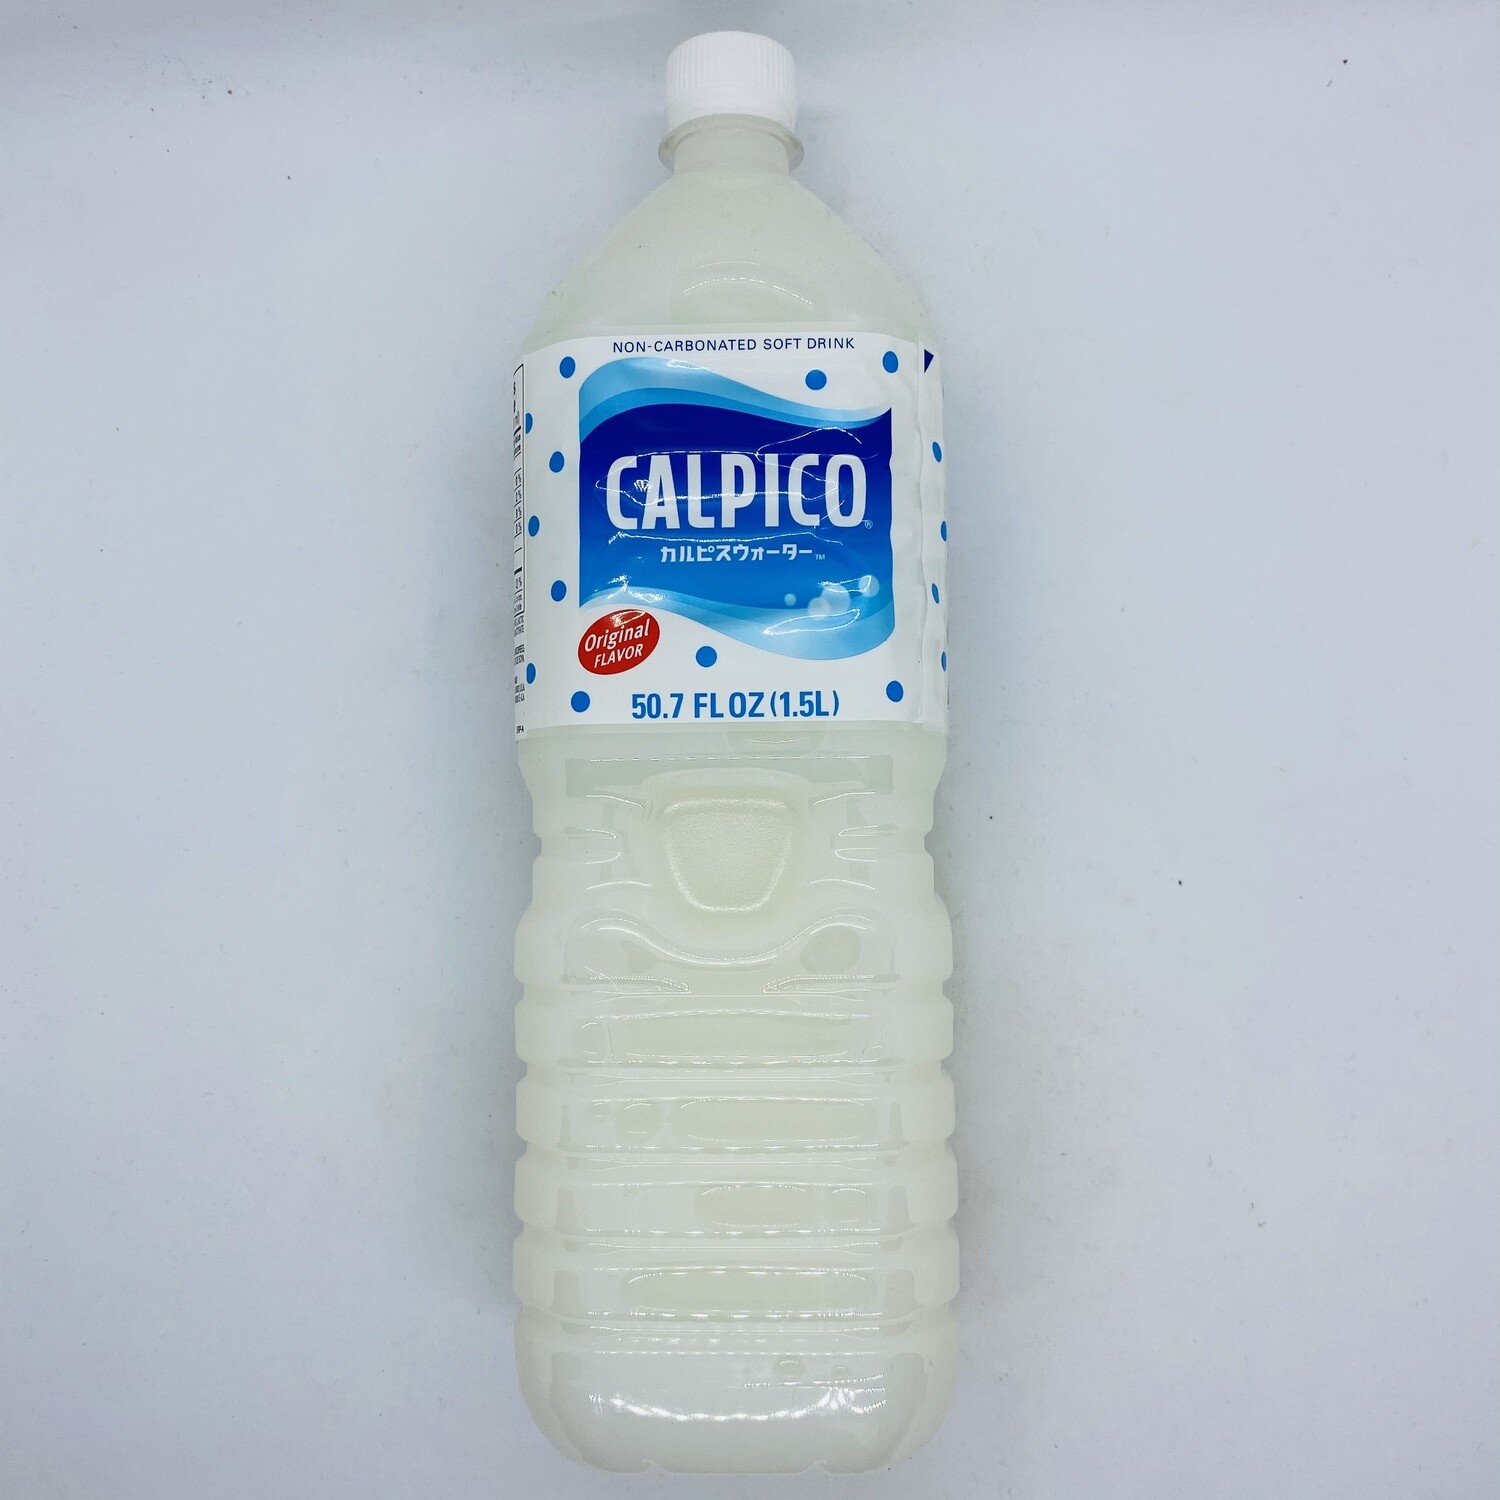 Calpico Original 1.5L